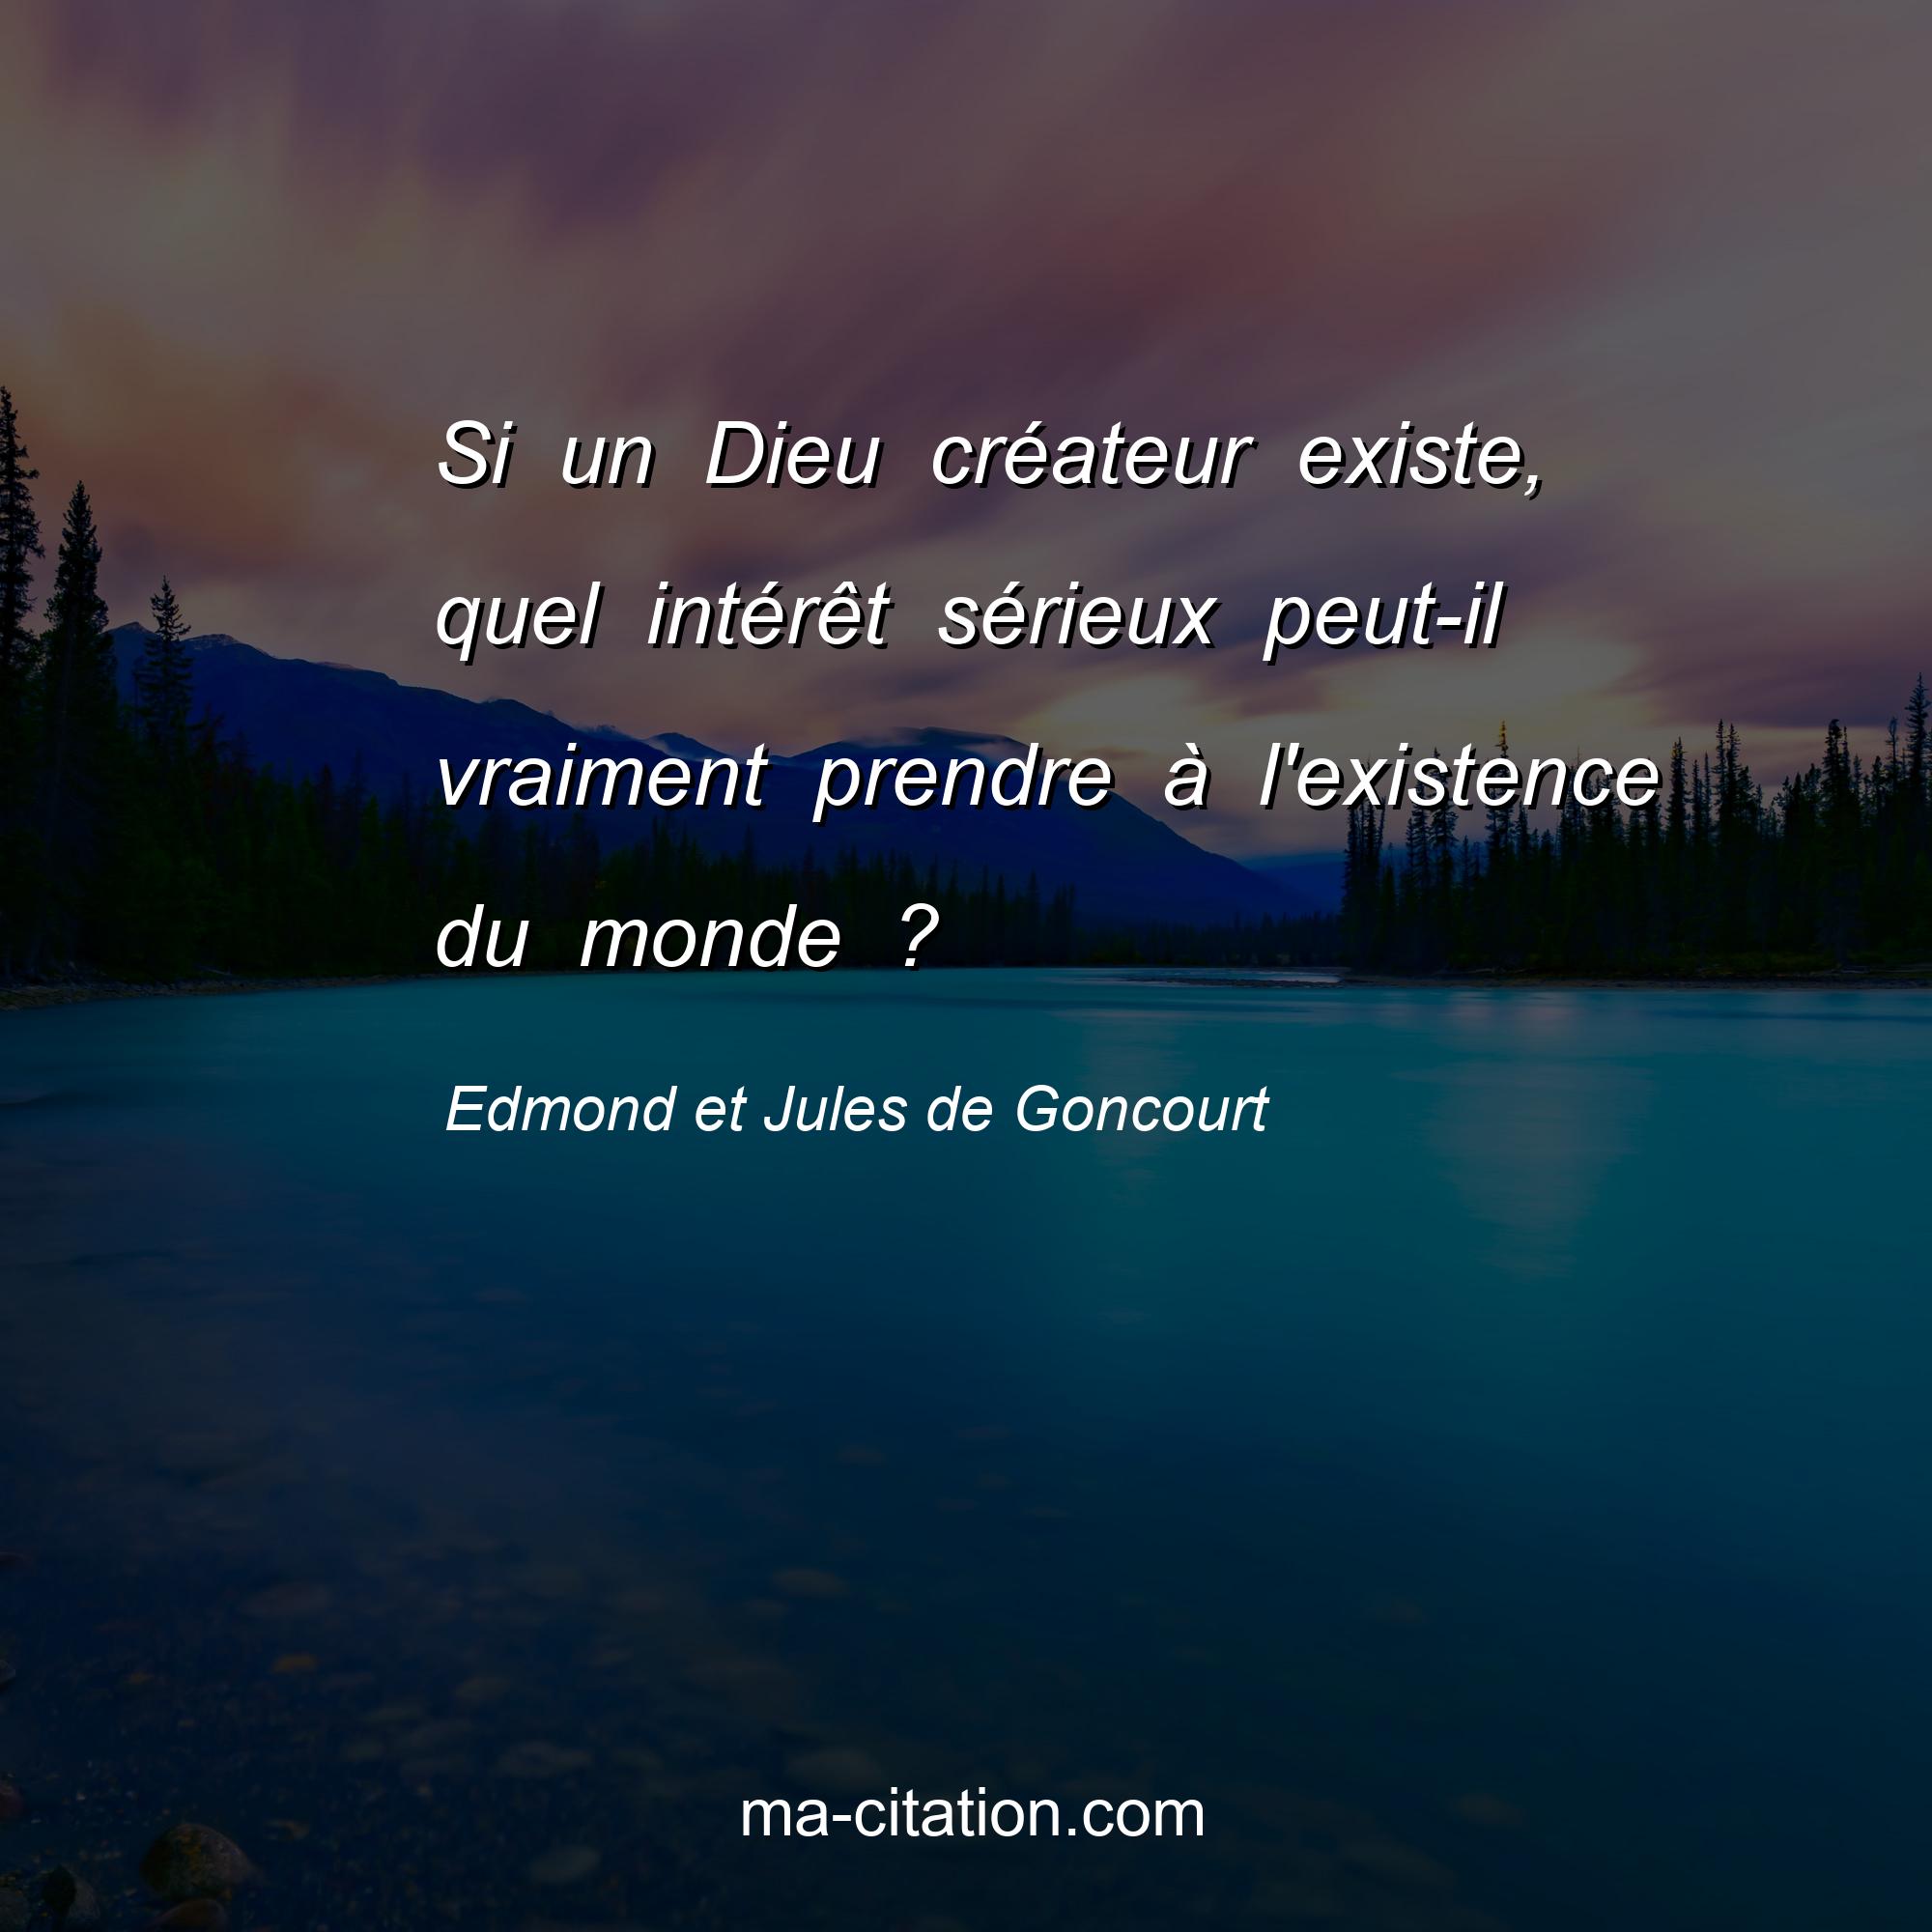 Edmond et Jules de Goncourt : Si un Dieu créateur existe, quel intérêt sérieux peut-il vraiment prendre à l'existence du monde ?